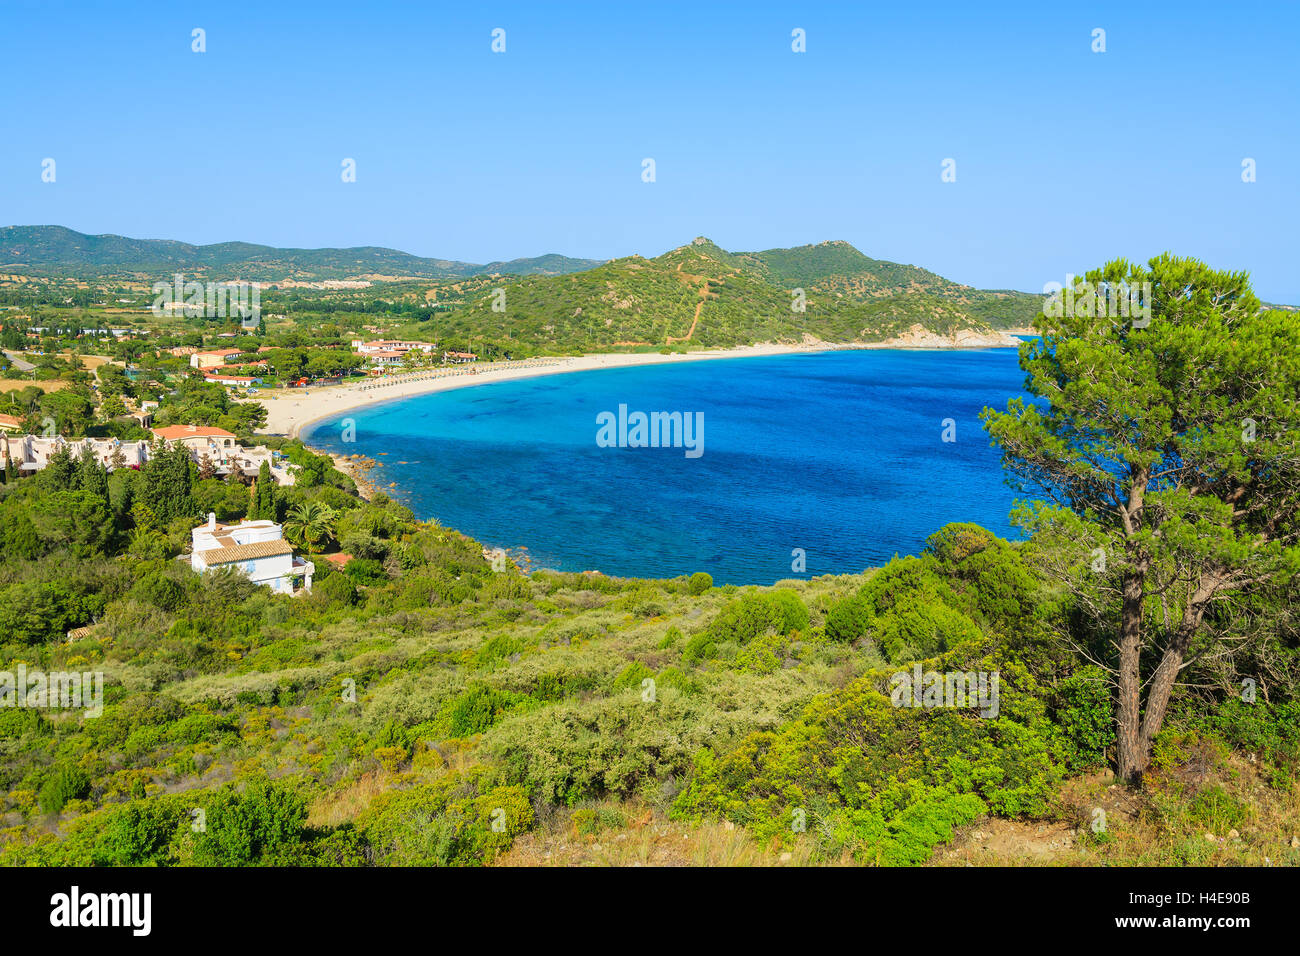 La costa de la isla de Cerdeña, con vistas a la hermosa bahía de Capo Boi, Italia Foto de stock